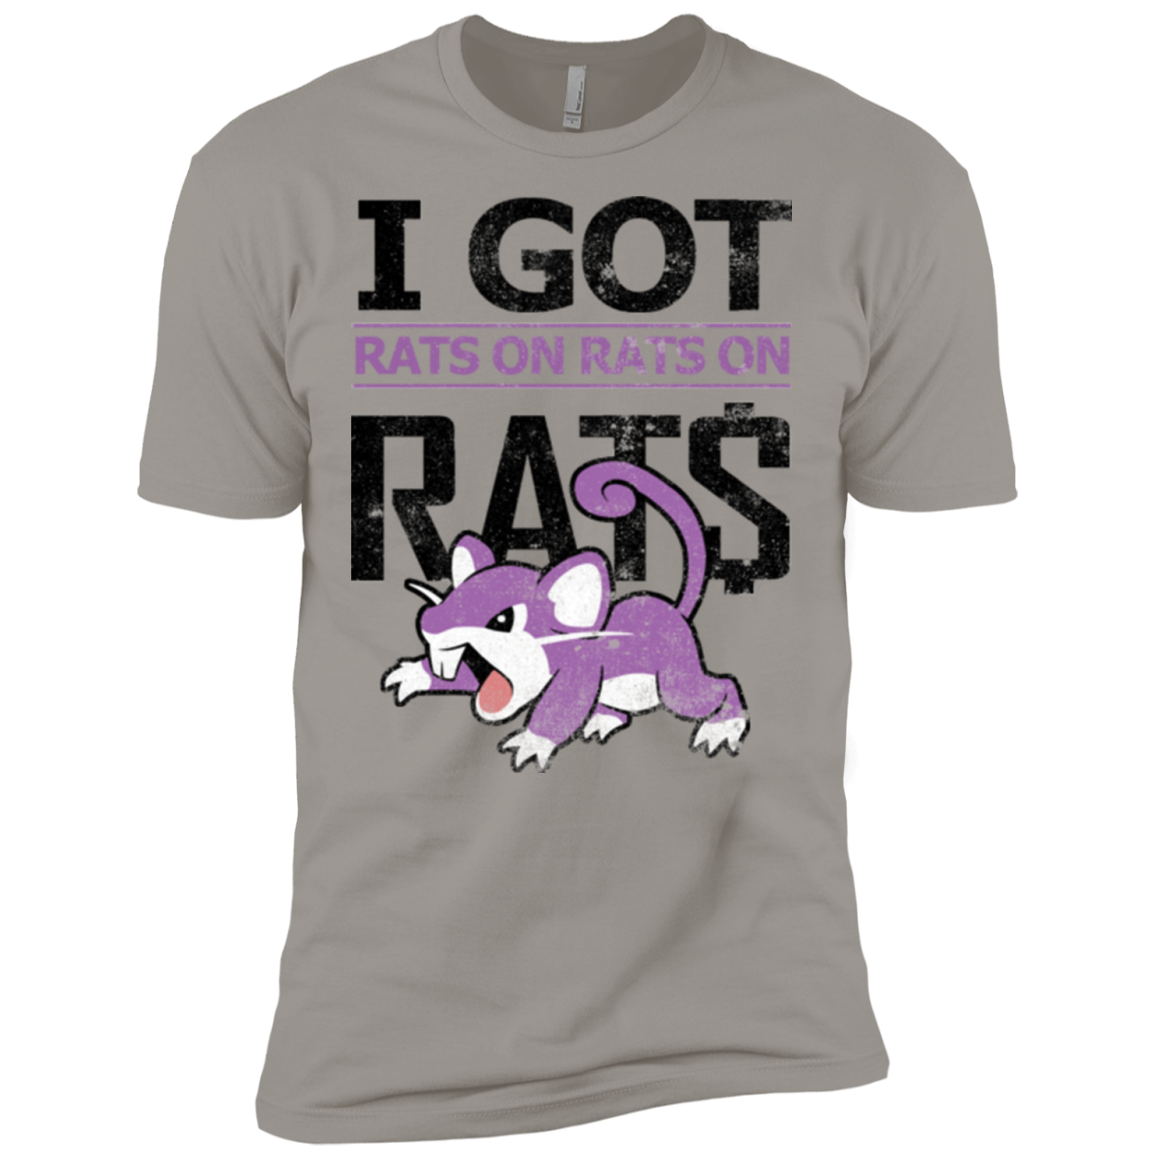 Rats on rats on rats Men's Premium T-Shirt